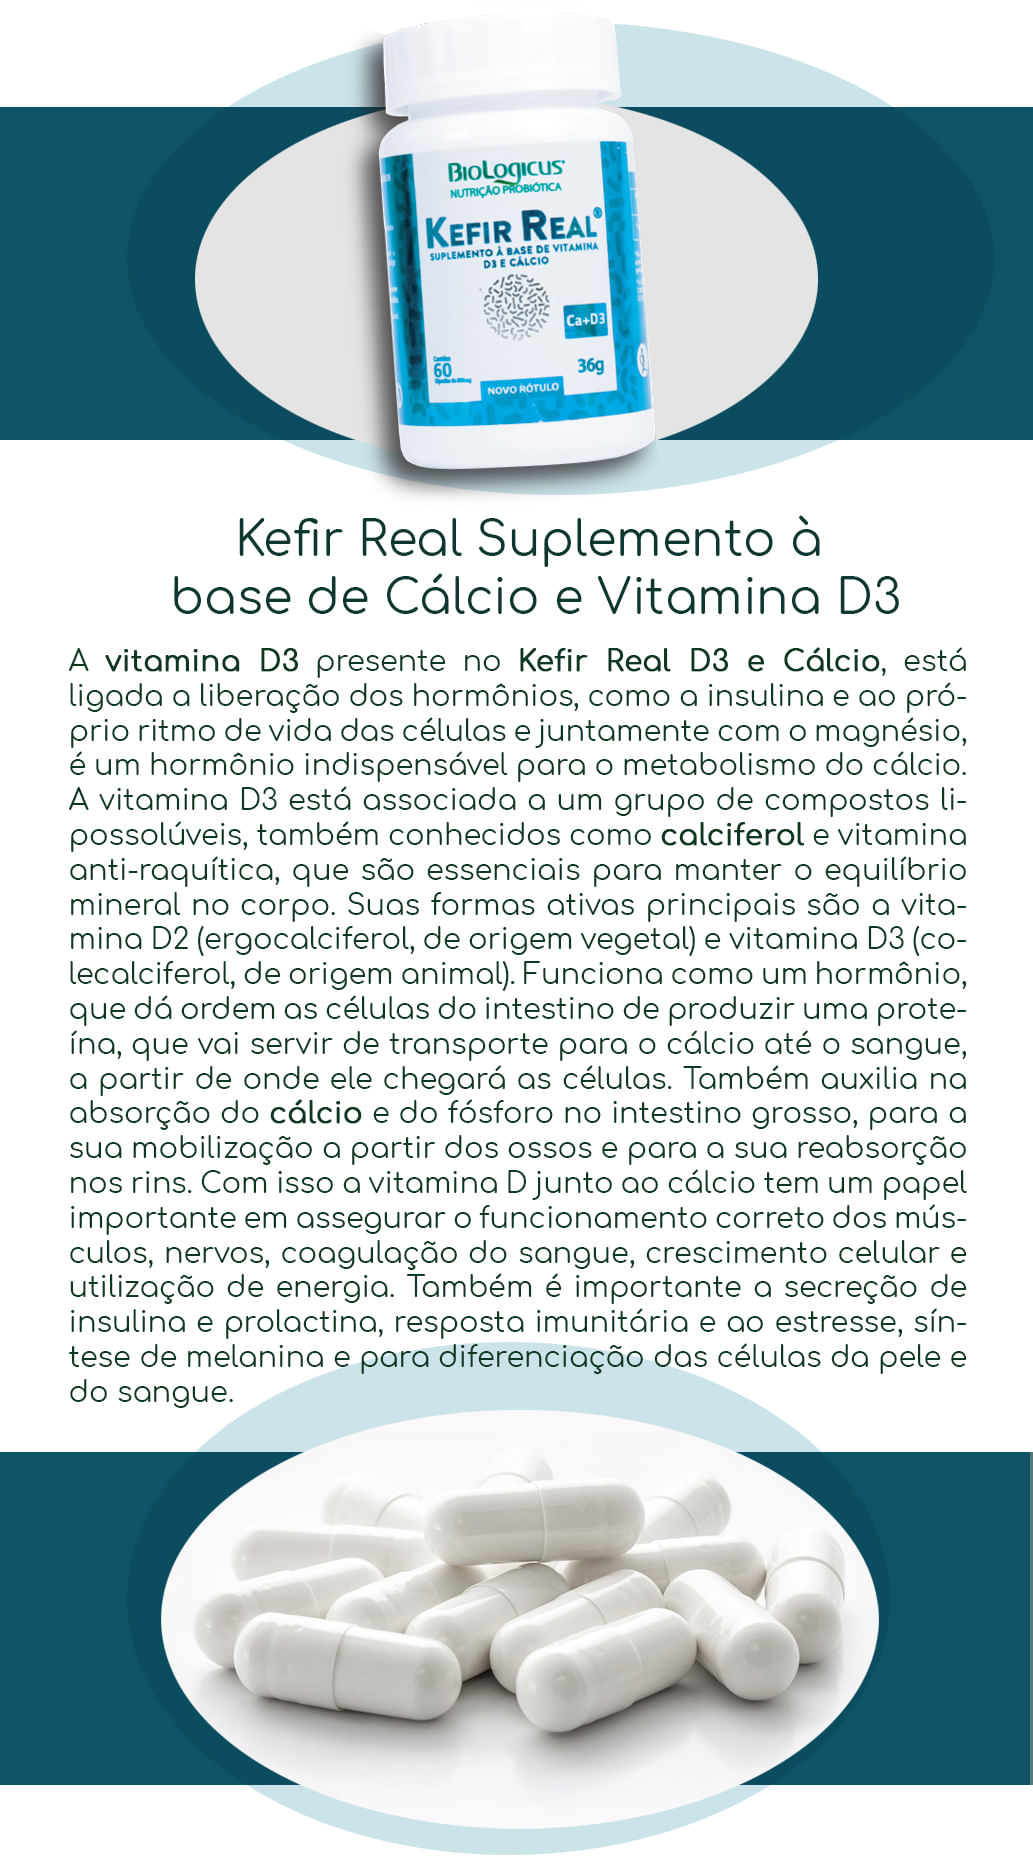 Kefir Real de Cálcio e Vitamina D3, Loja Projeto Verão